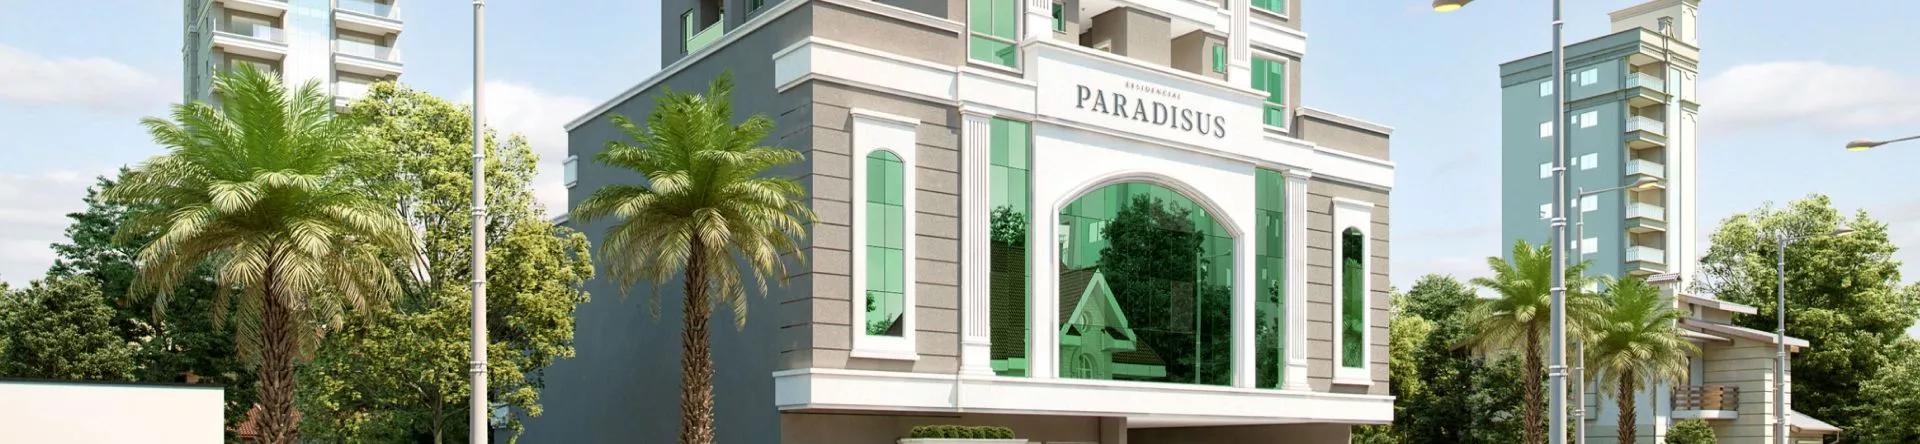 Residencial Paradisus, da construtora Salim & Galvan Construtora (1)